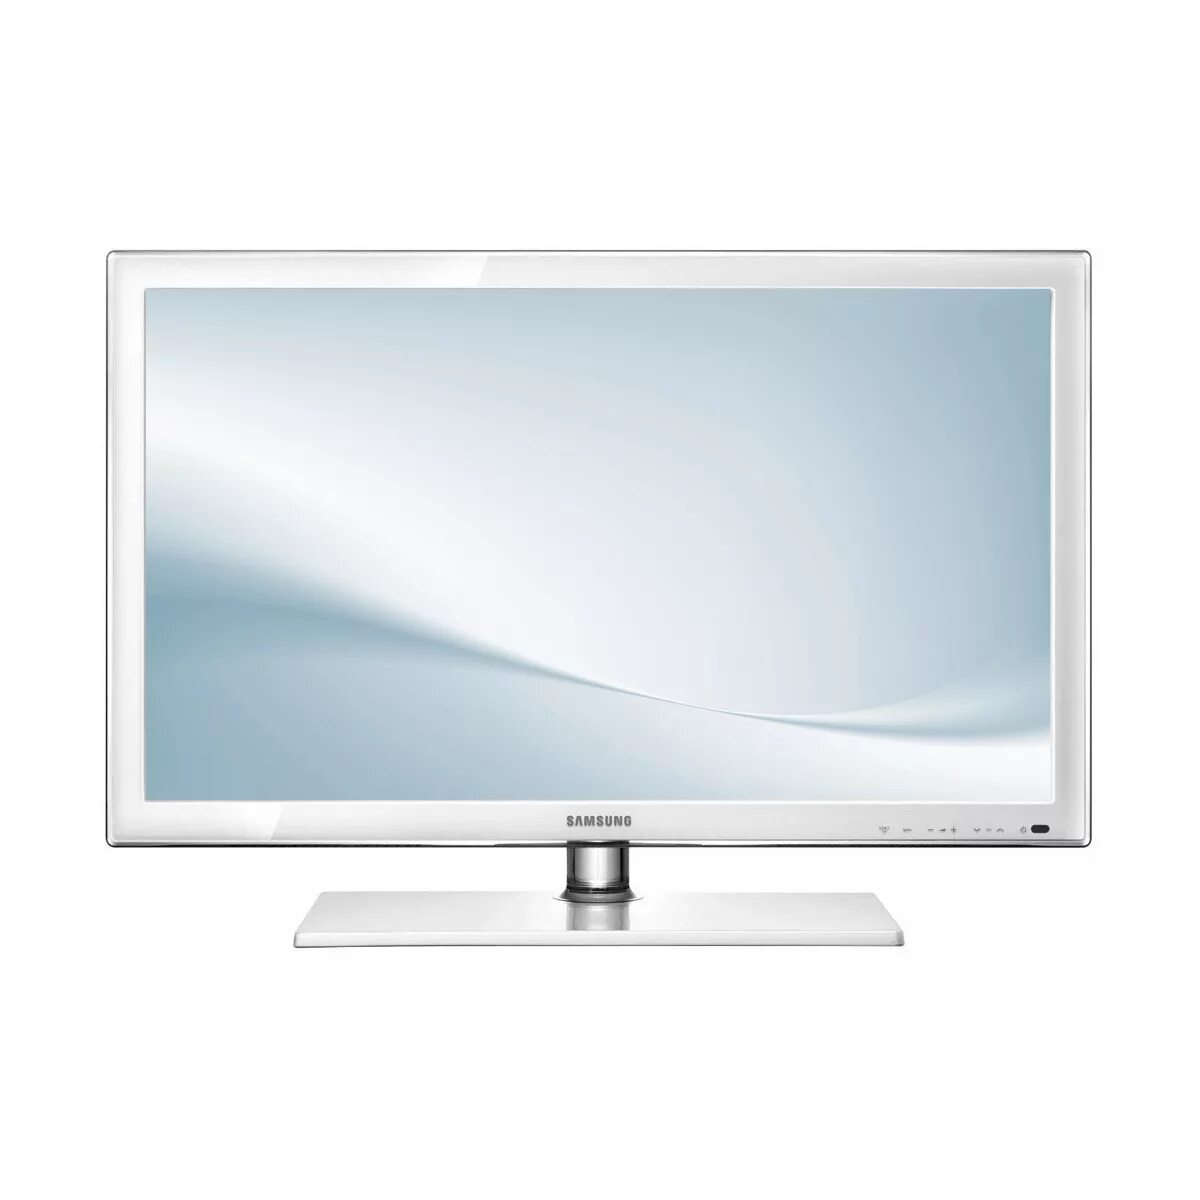 Телевизор lg эльдорадо. Телевизор самсунг ue22d5010. Телевизор Samsung ue22d5010 22". Белый телевизор самсунг 32 дюйма Smart. Самсунг LCD 24 дюйма белый.